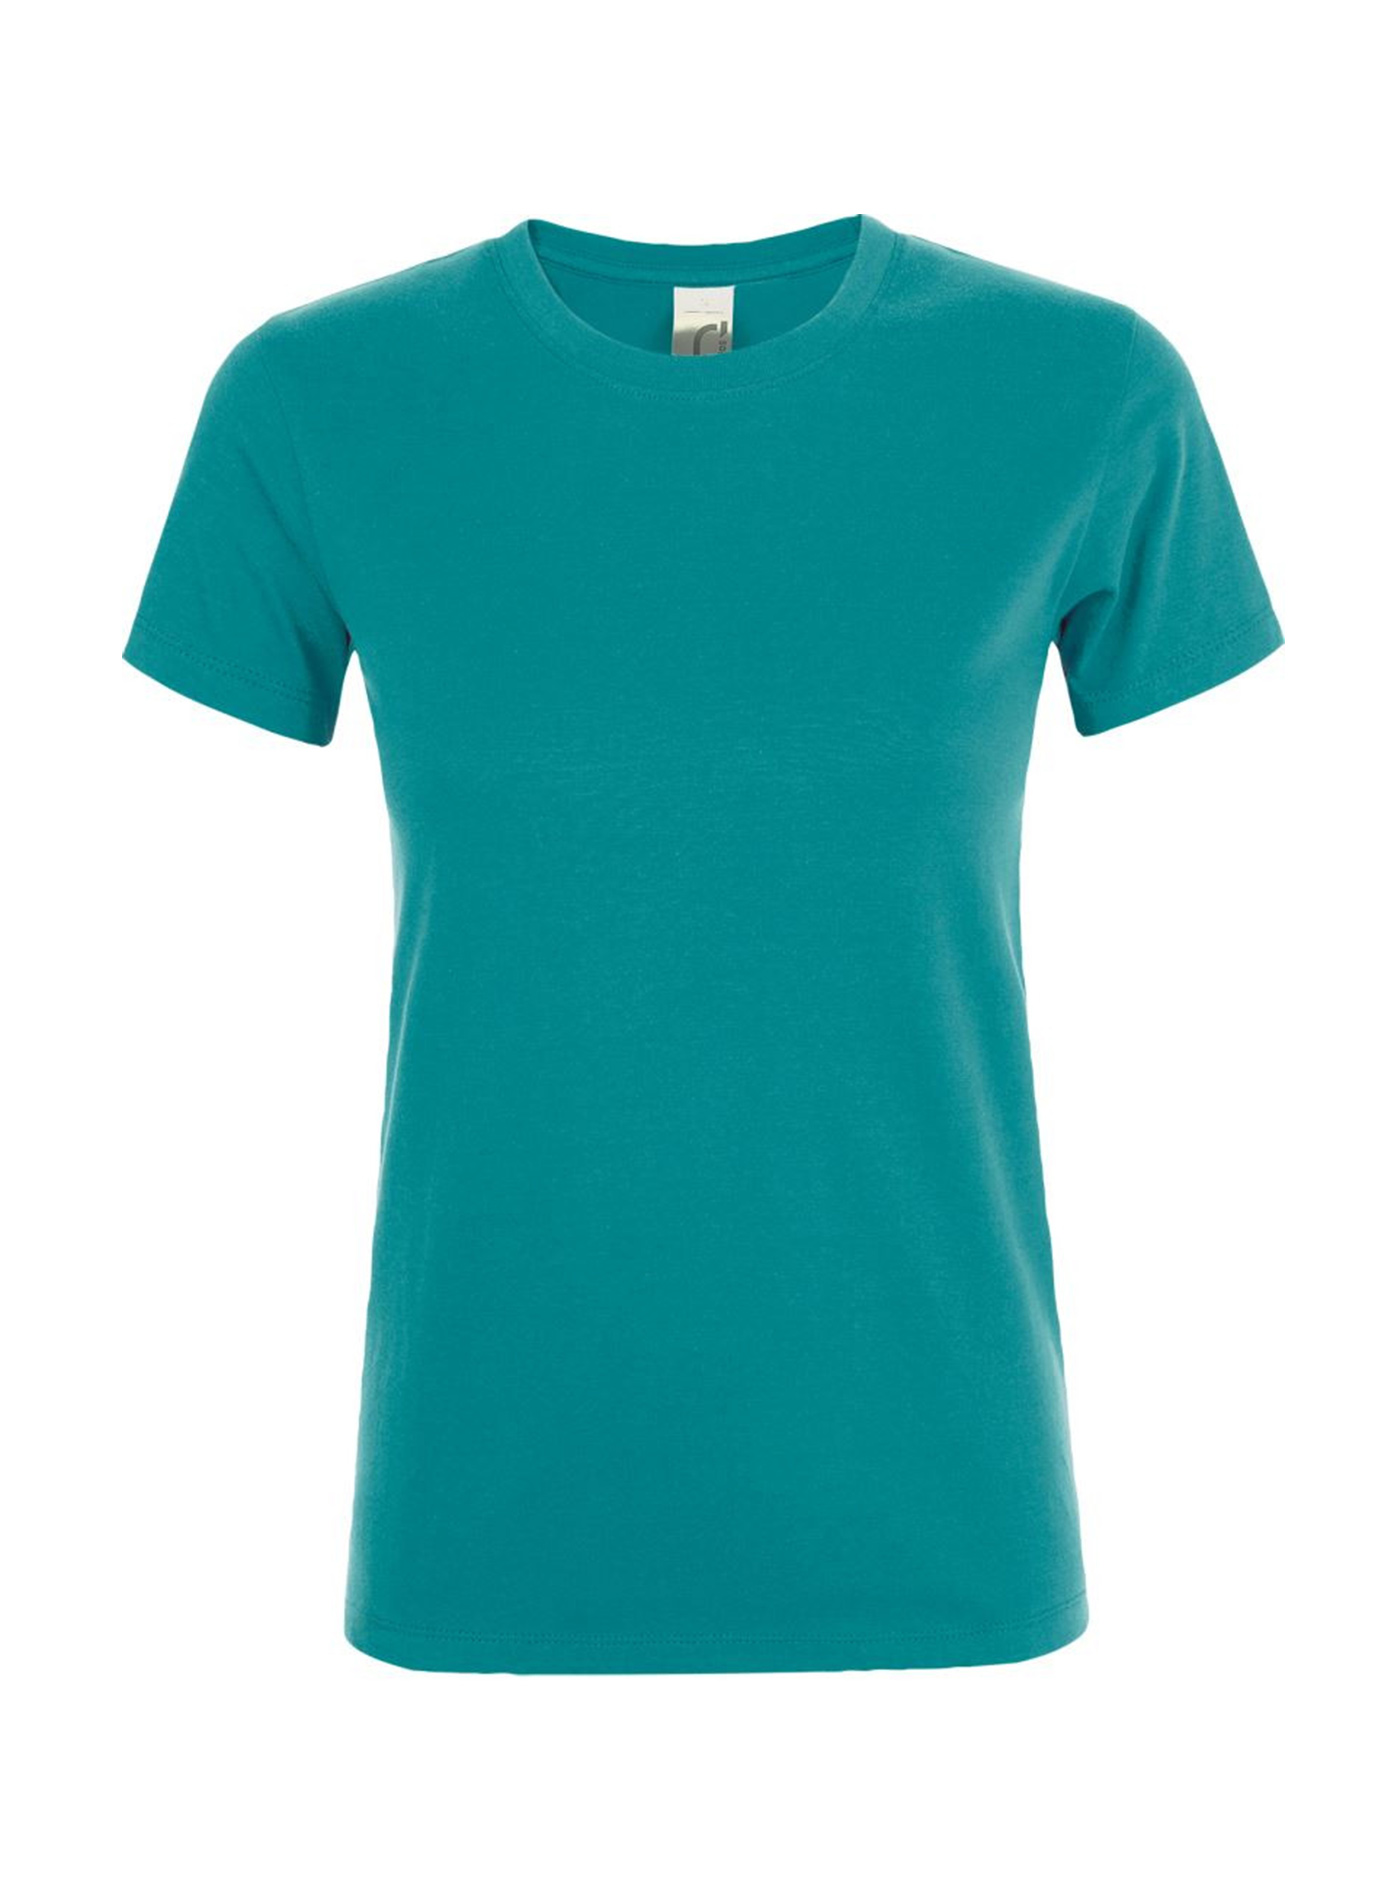 Dámské tričko SOL'S Regent - Tyrkysově modrá XL